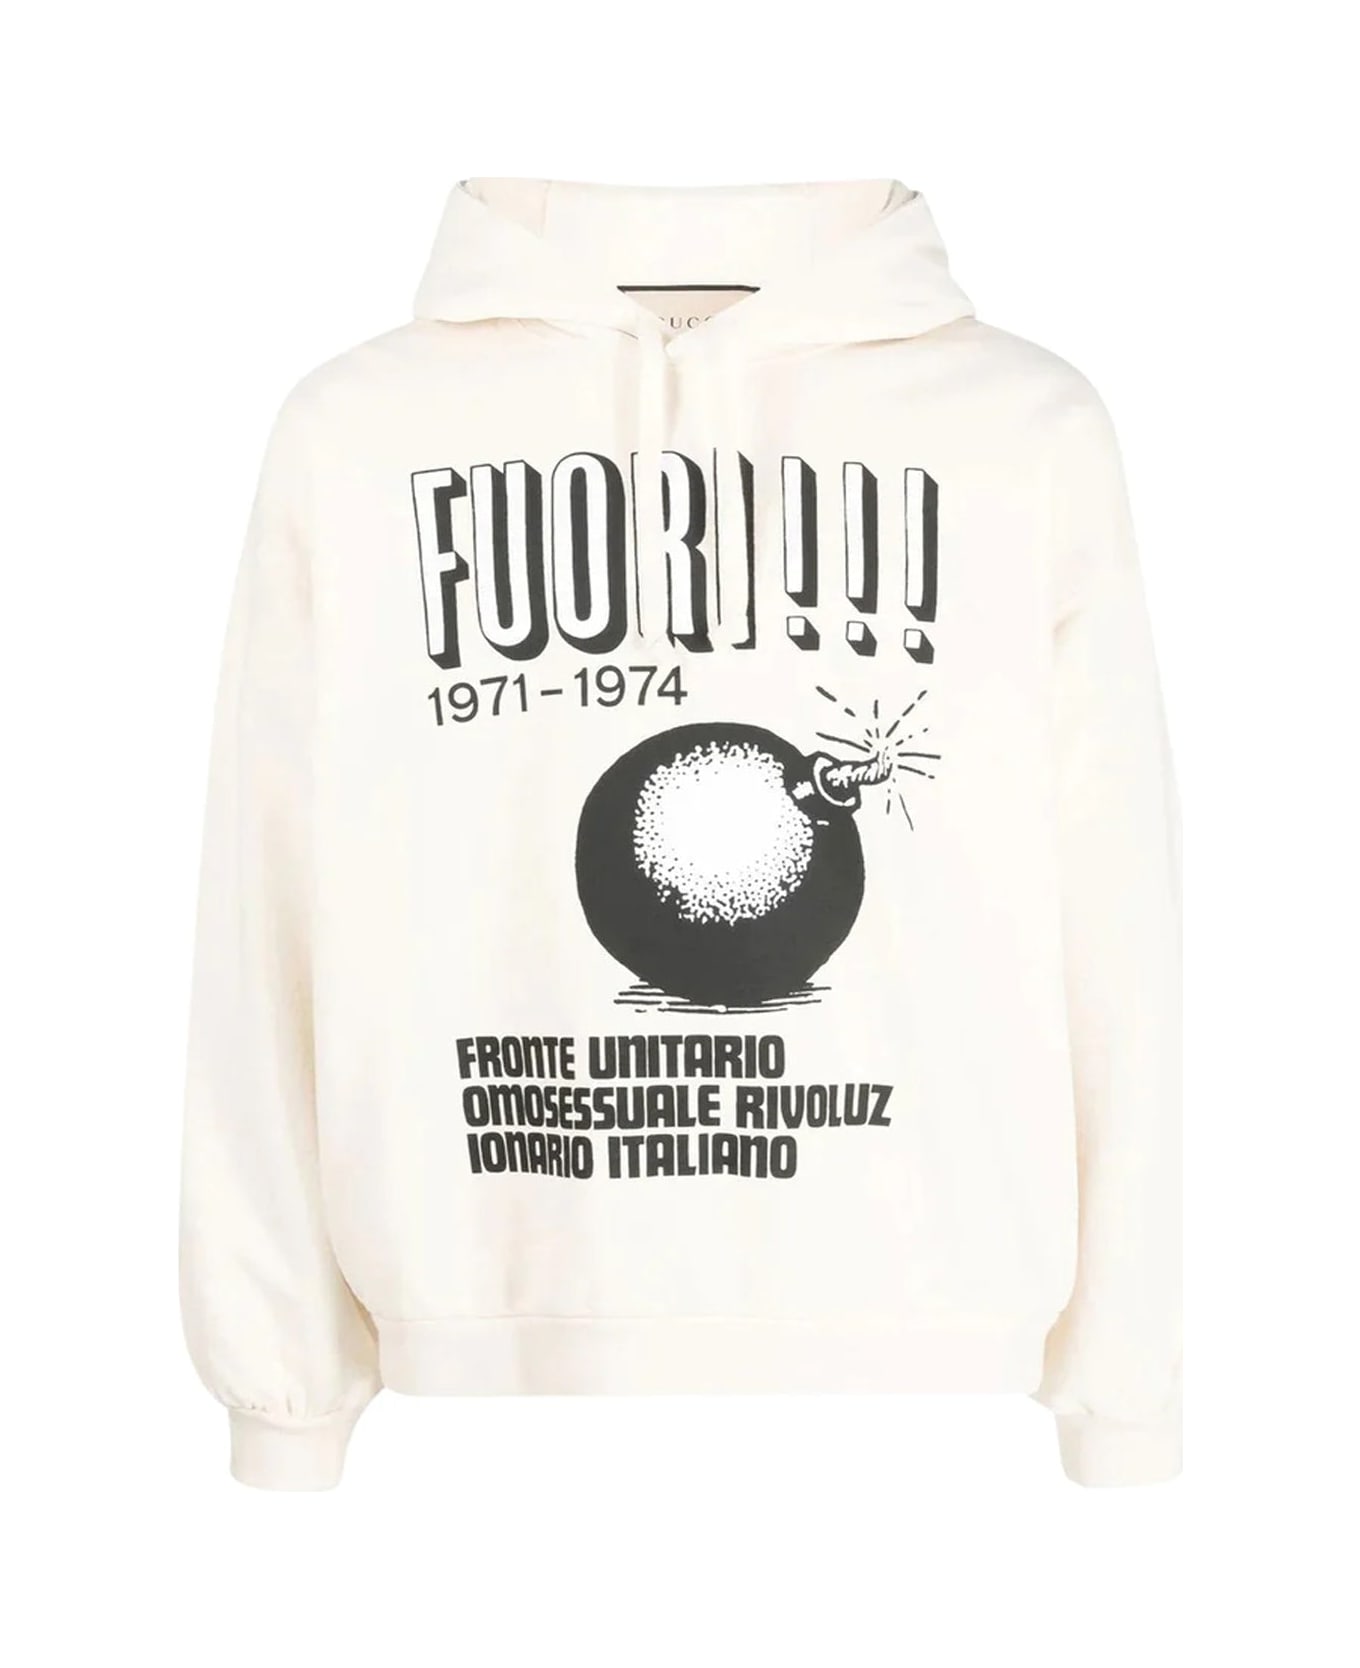 Gucci Printed Hoodie Sweatshirt - Beige フリース